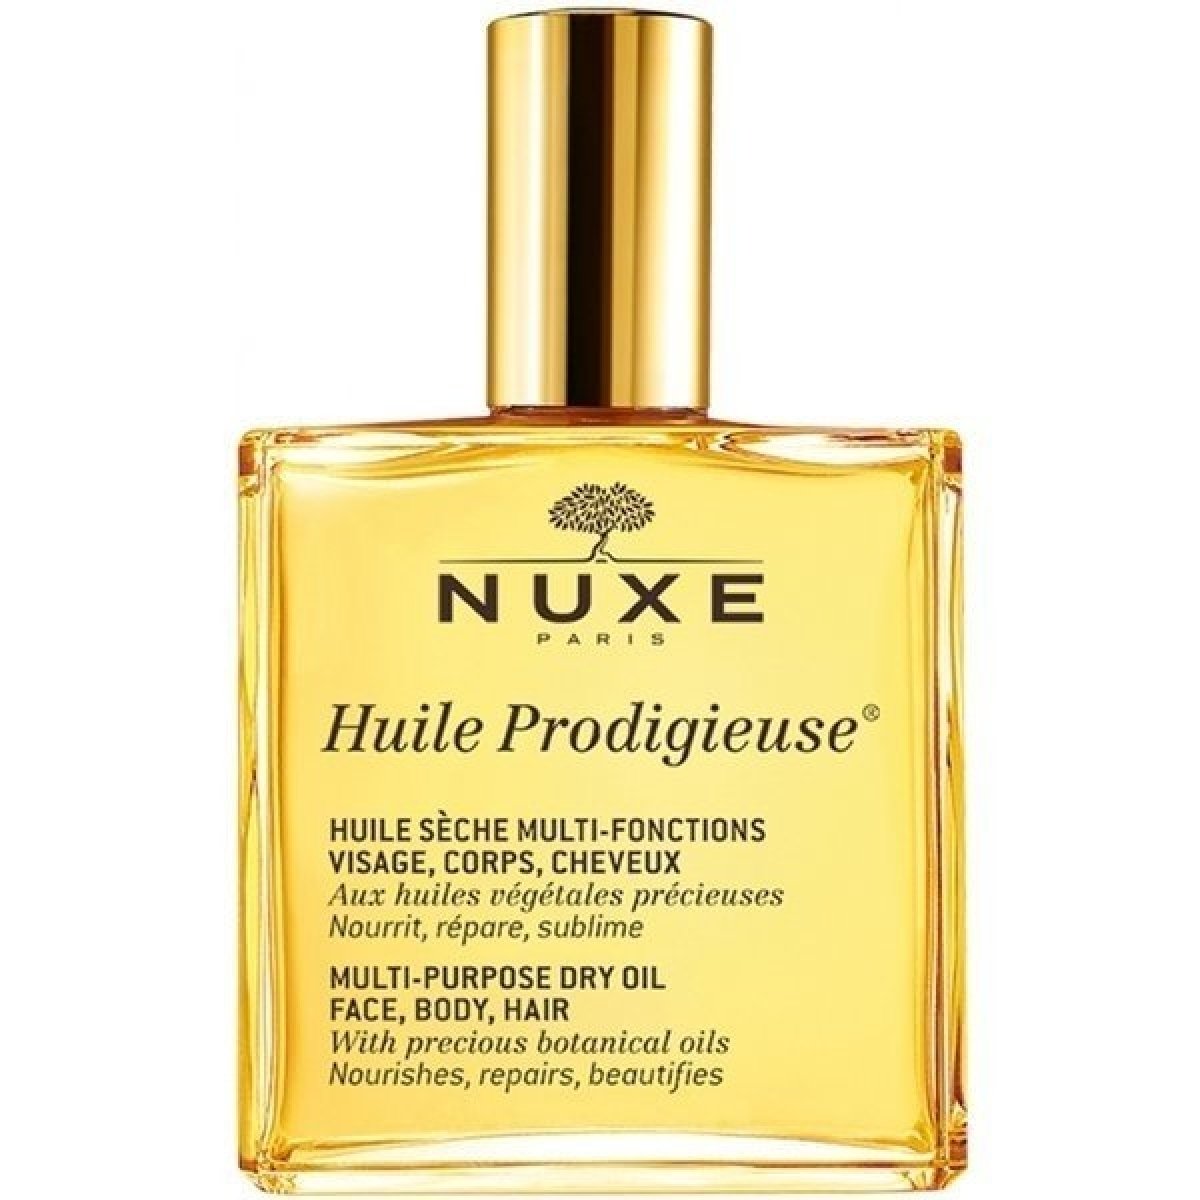 Nuxe Huile Prodigieuse multifunkční suchý olej 50 ml od 340 Kč - Heureka.cz